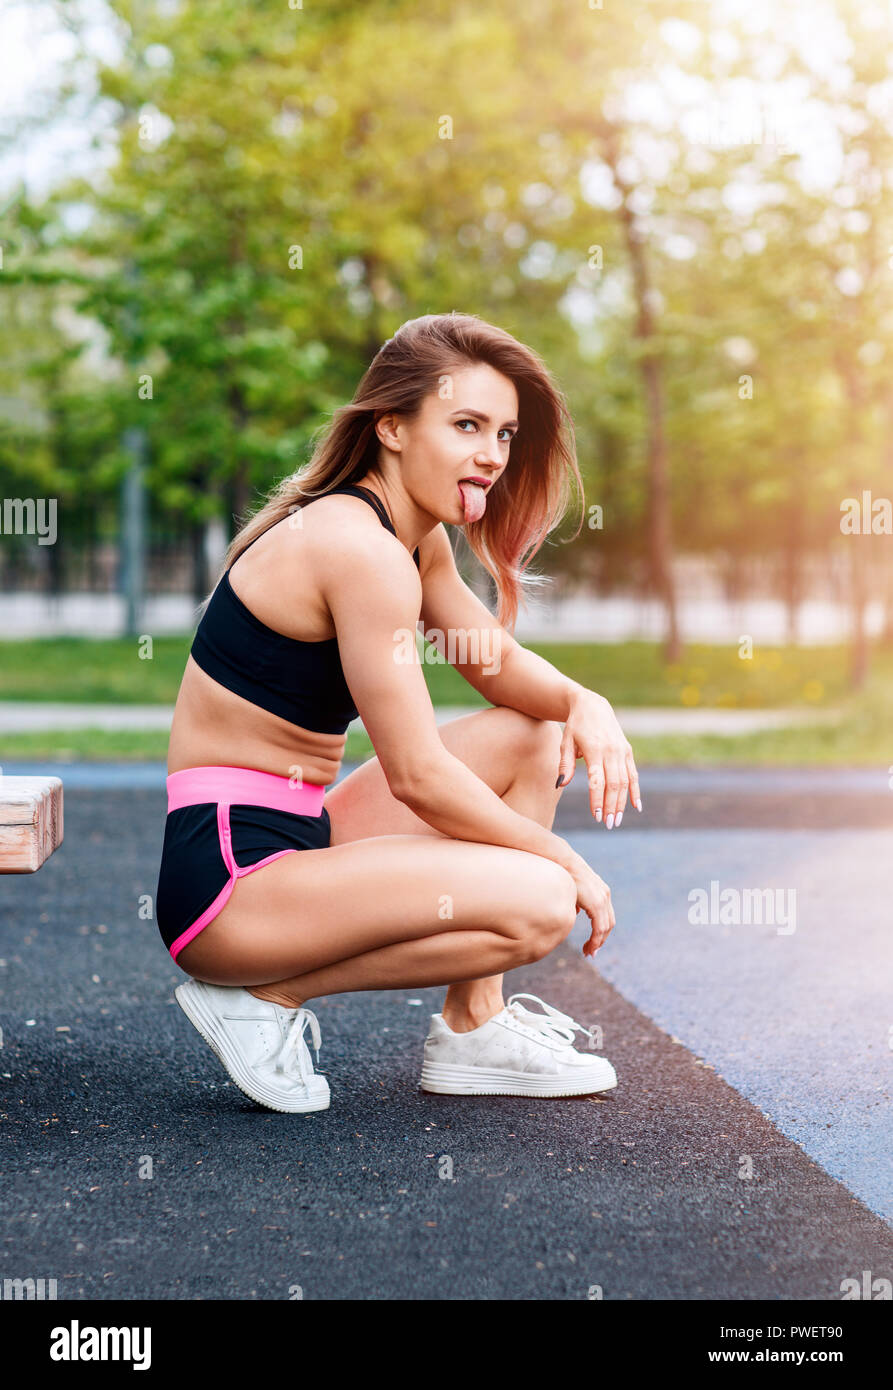 Sportliche Frau mit perfekten athletischen Körper zeigt Zunge Stockfoto